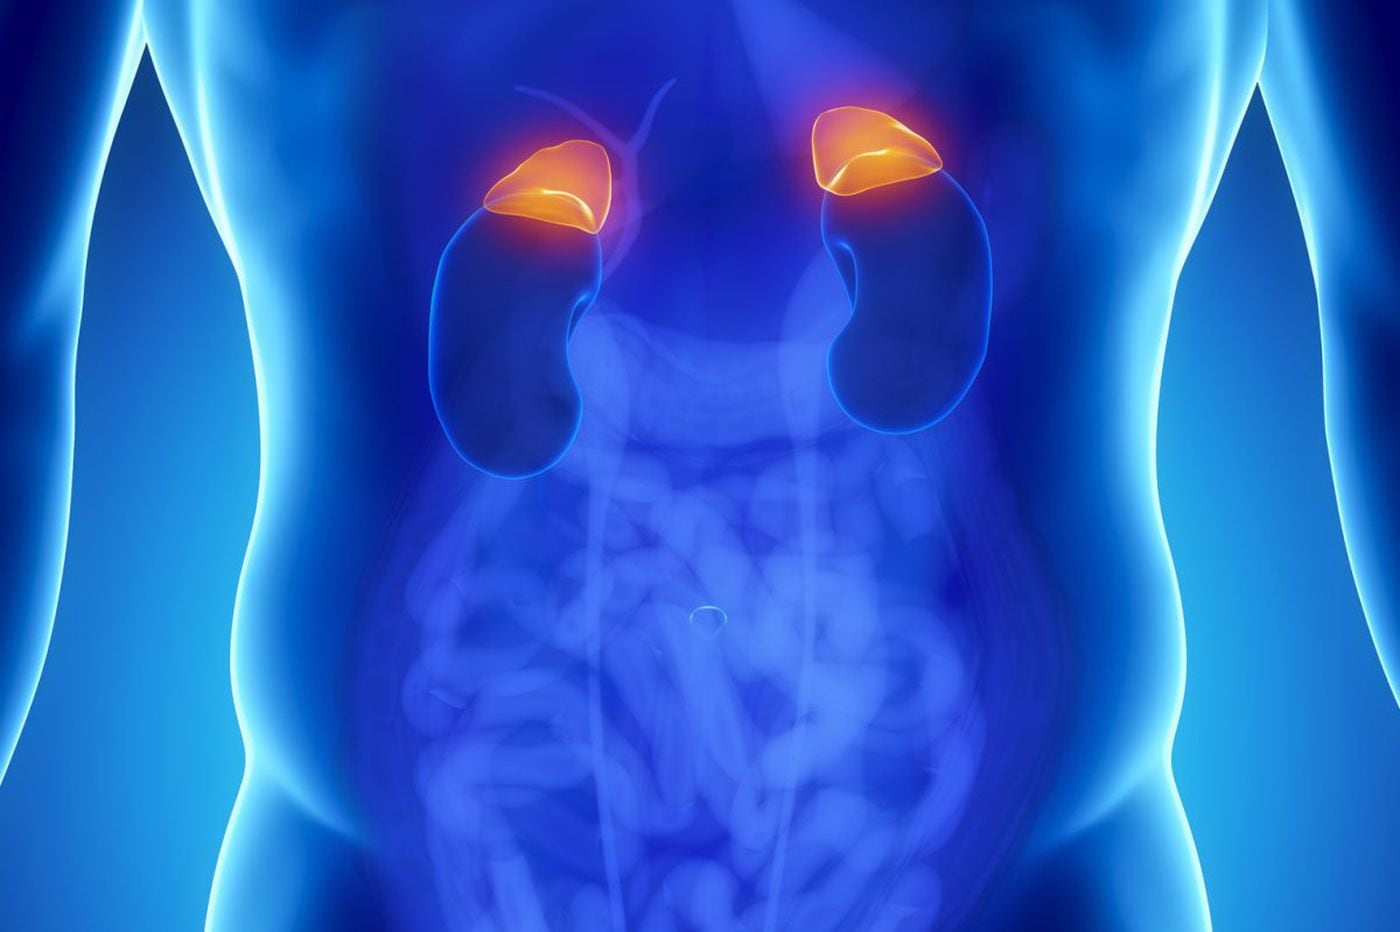 adrenal tumor on kidney